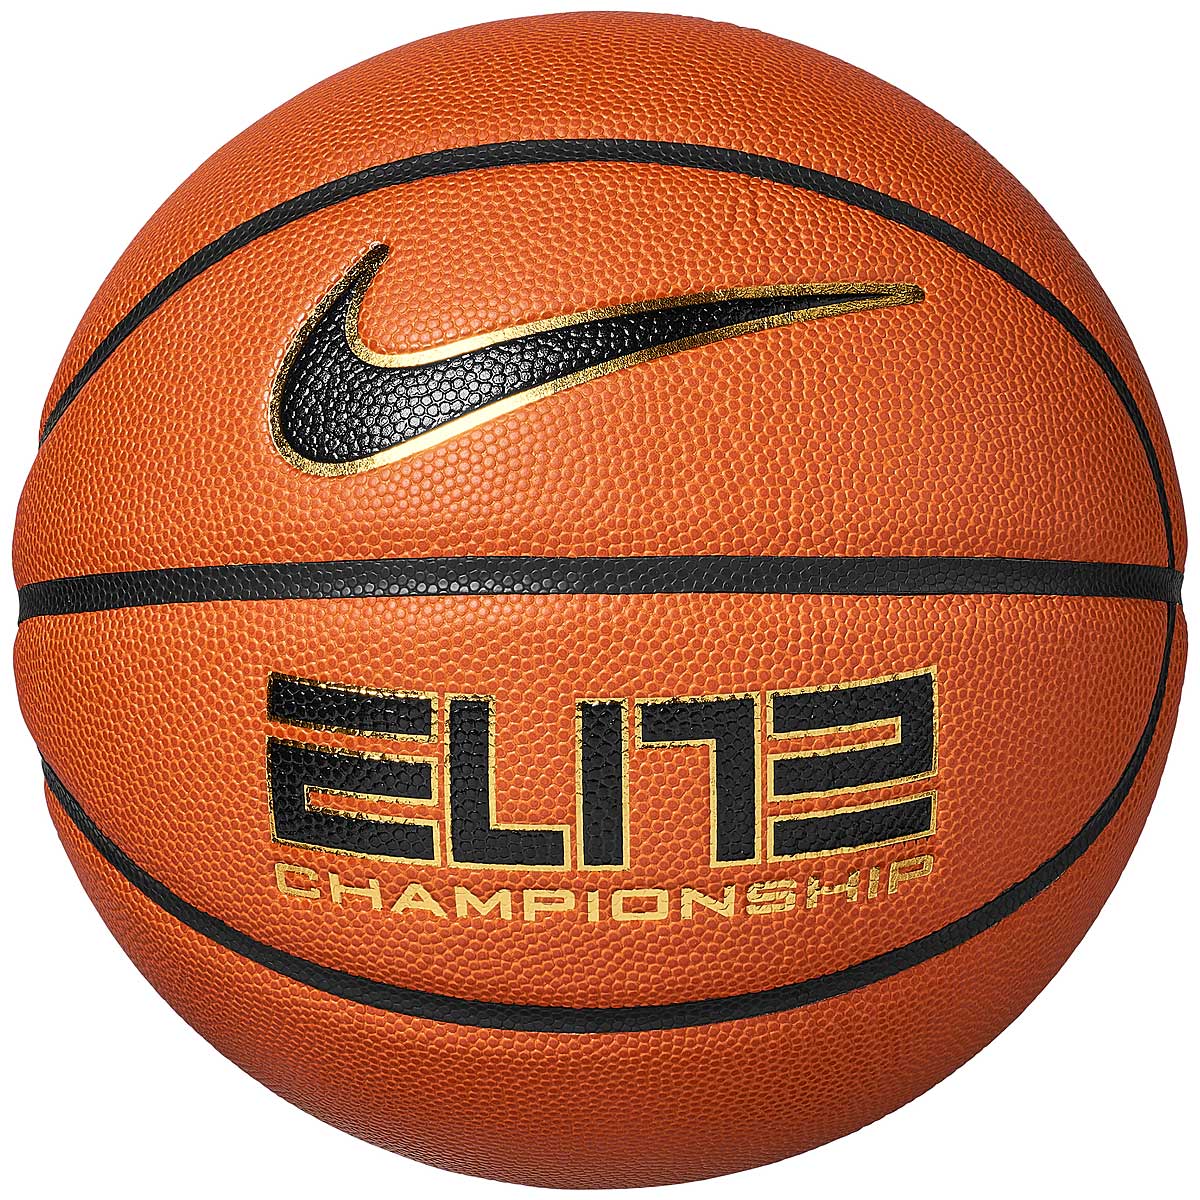 Image of Nike Elite Championship 8p 2.0 Basketball, Amber/black/metallic Gold/black